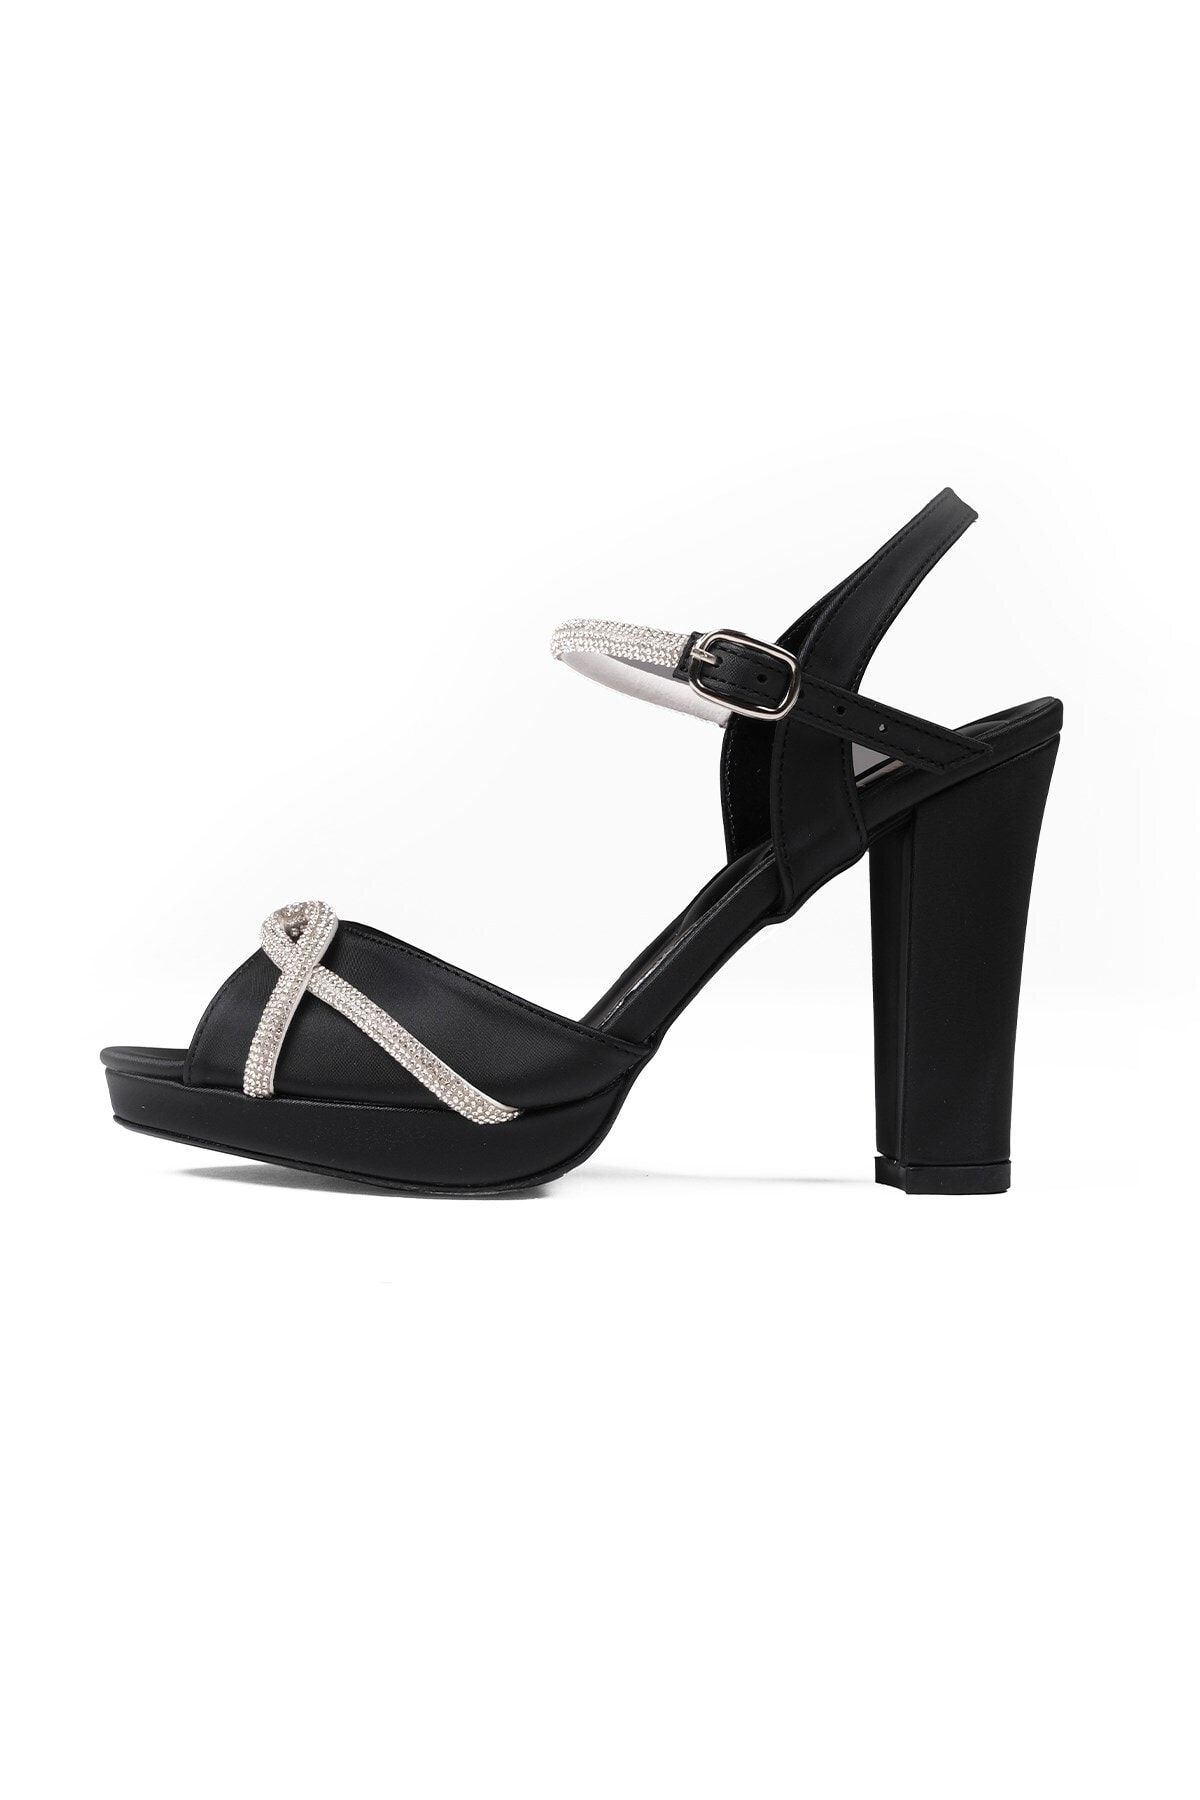 Mio Gusto Siyah Renk Taş Bantlı, Platformlu Kadın Abiye Topuklu Ayakkabı